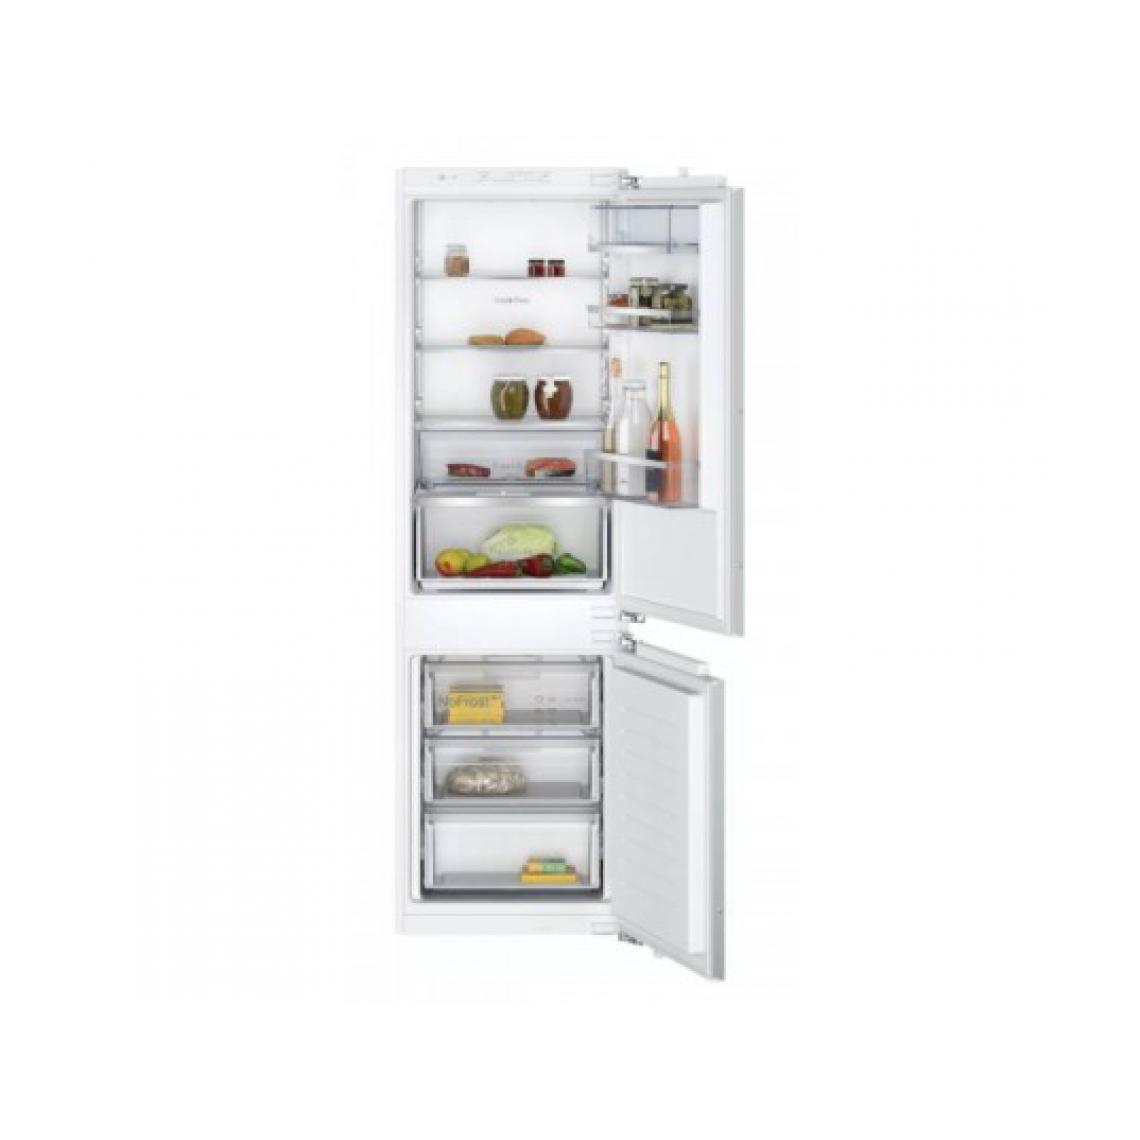 Montre Neff - Réfrigérateur congélateur encastrable KI7862FE0 - Réfrigérateur